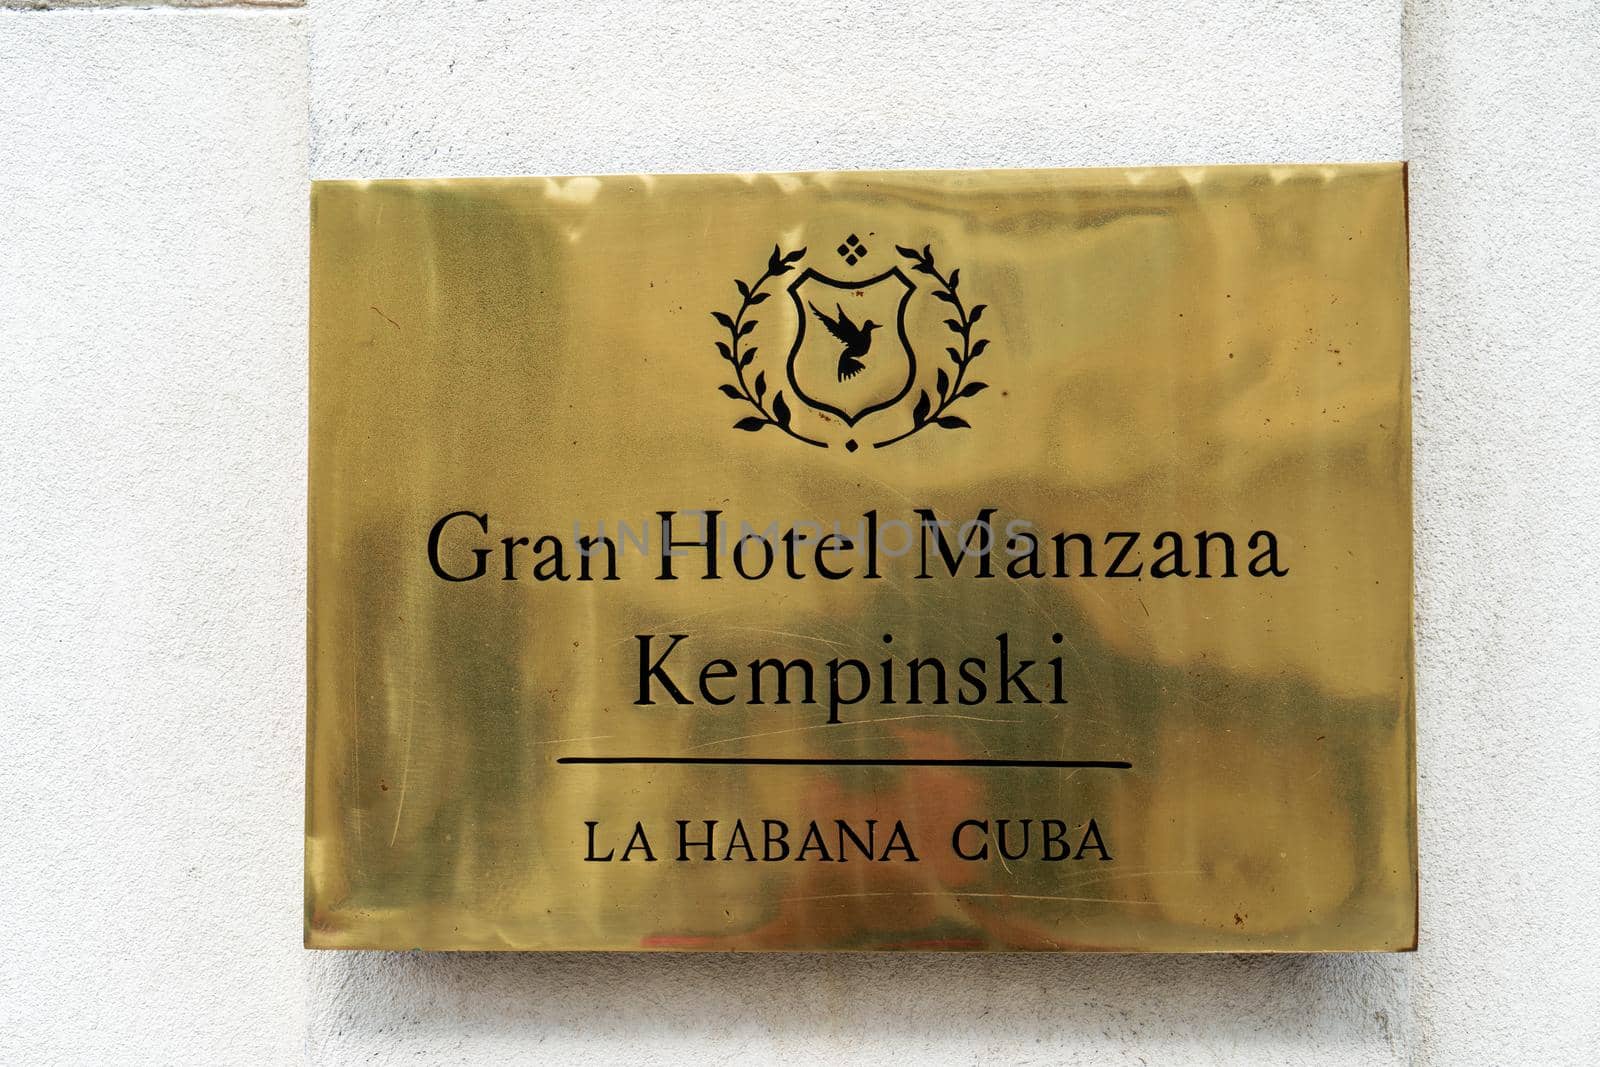 Havana Cuba. November 25, 2020: Metal plaque outside the Gran Hotel Manana Kempinski